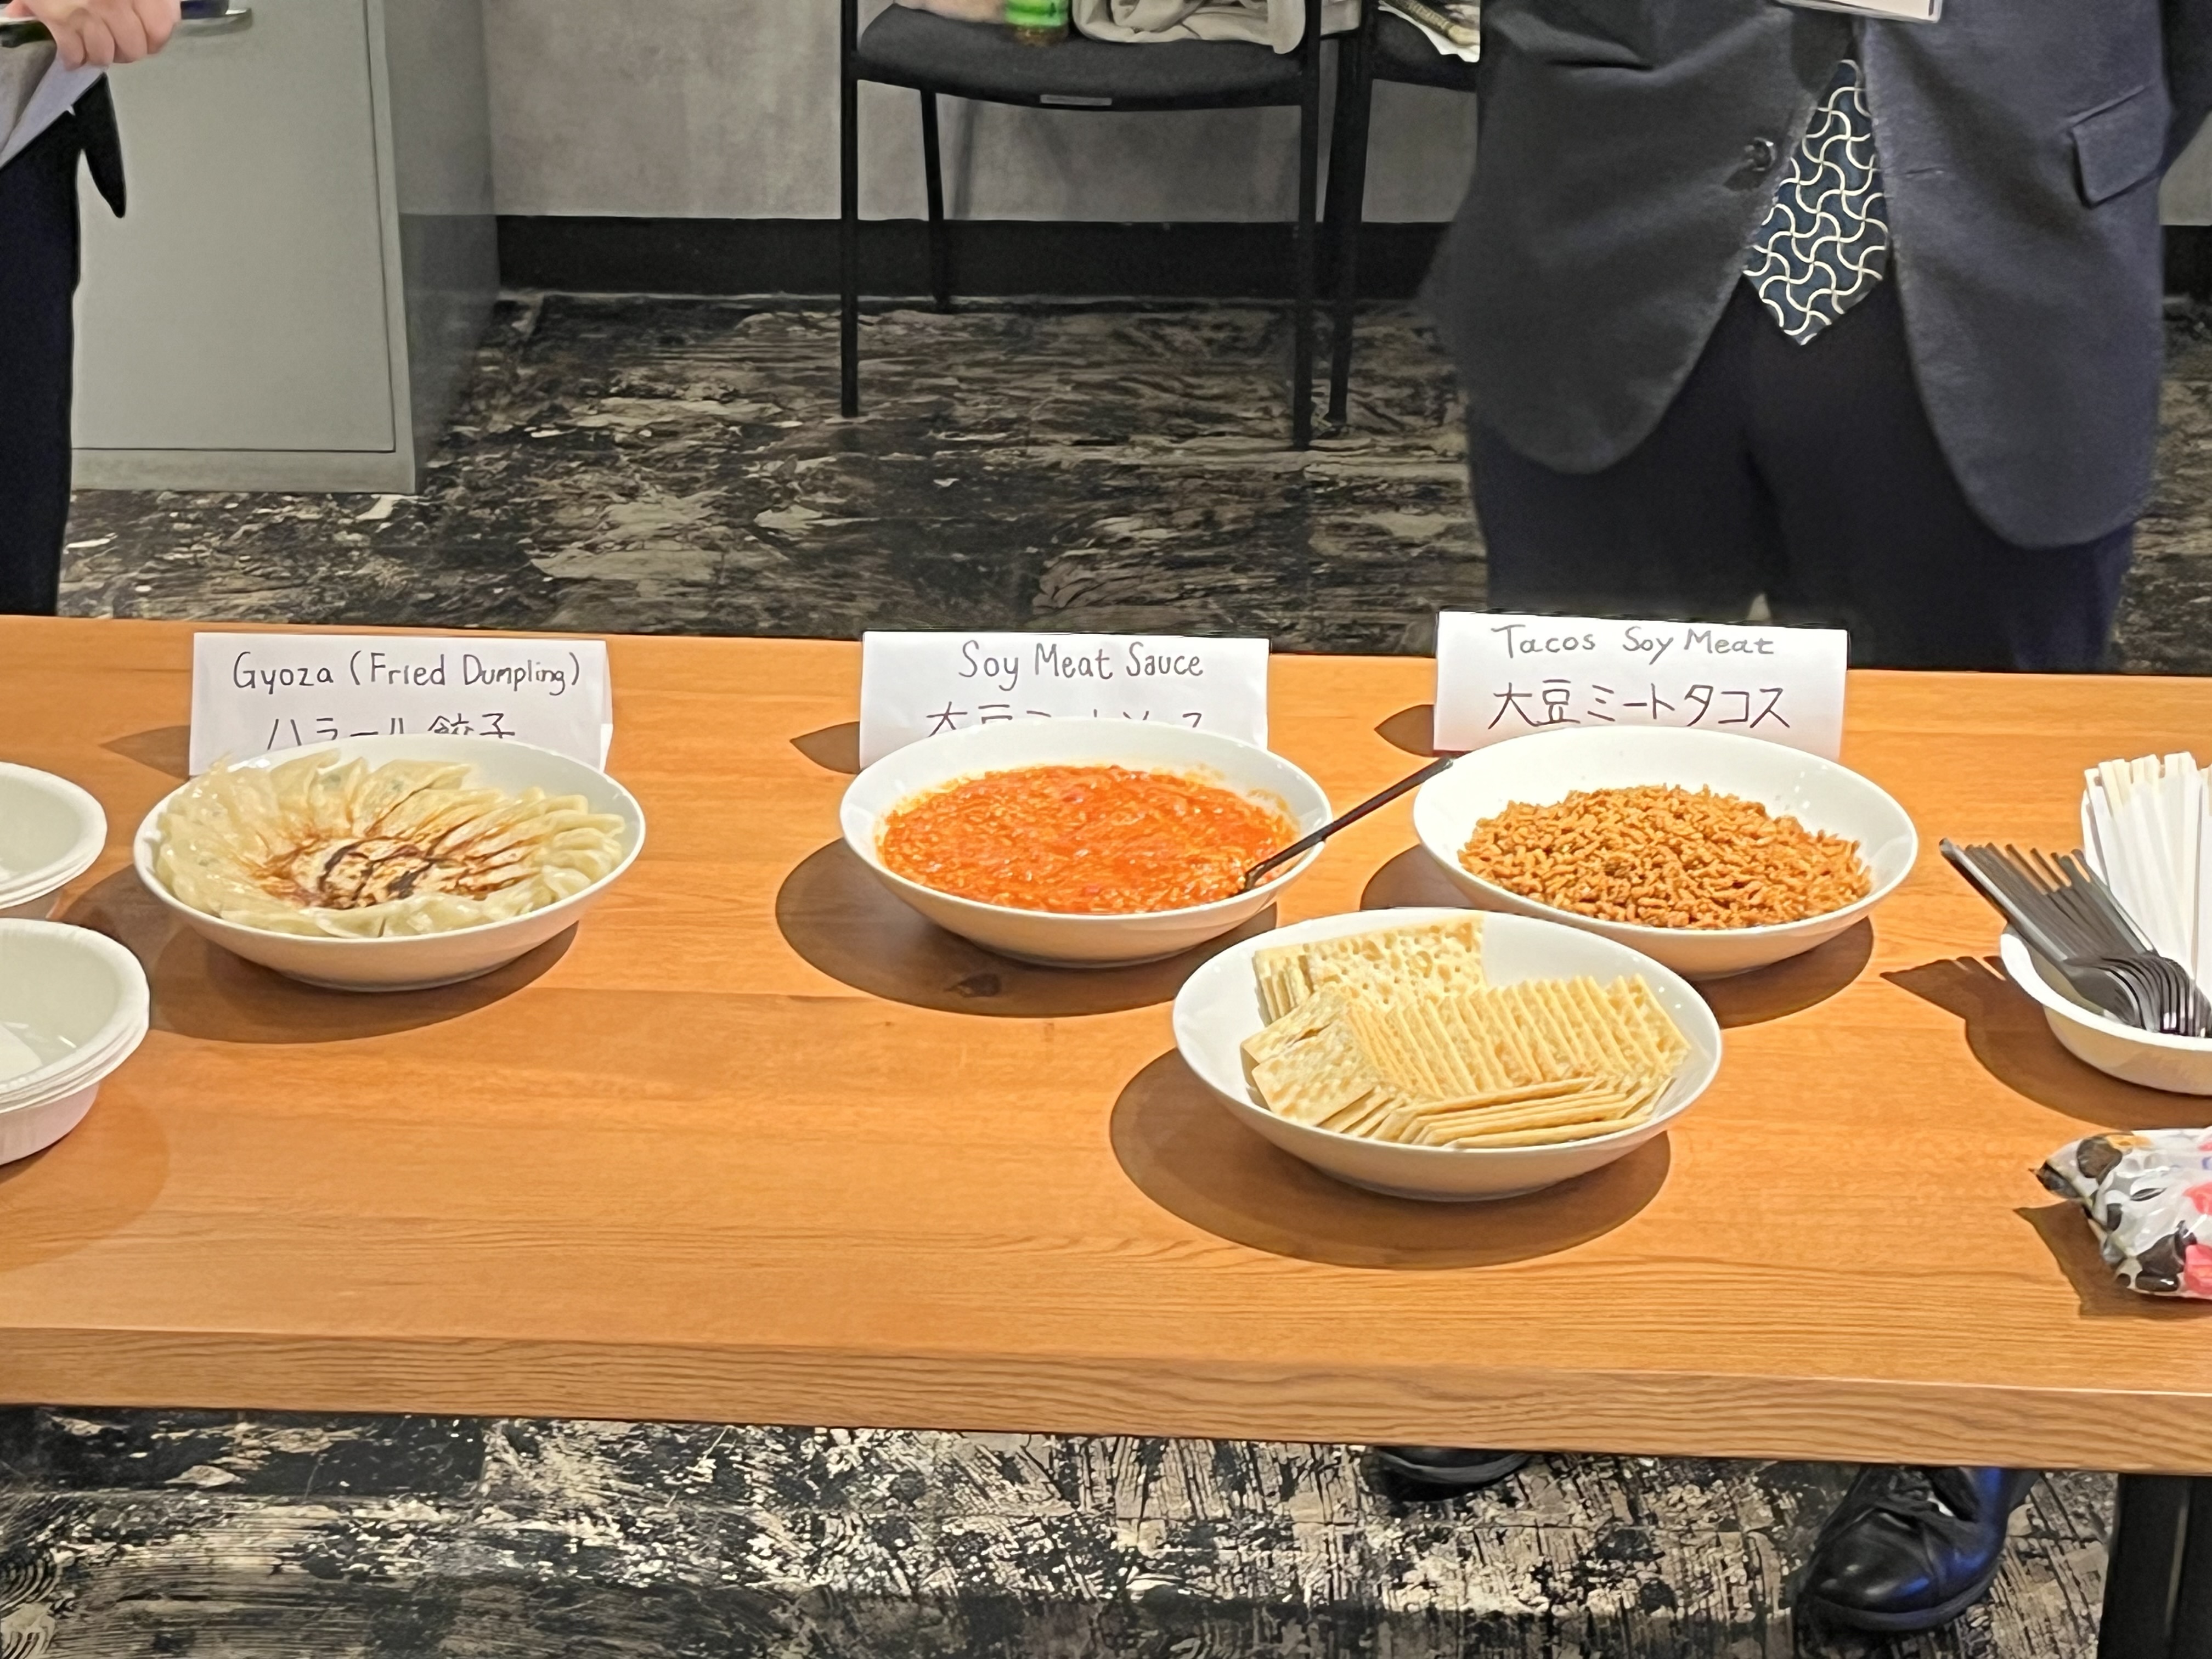 交流会で提供された大豆ミートを使用したミートソース、タコスミート、ハラル餃子